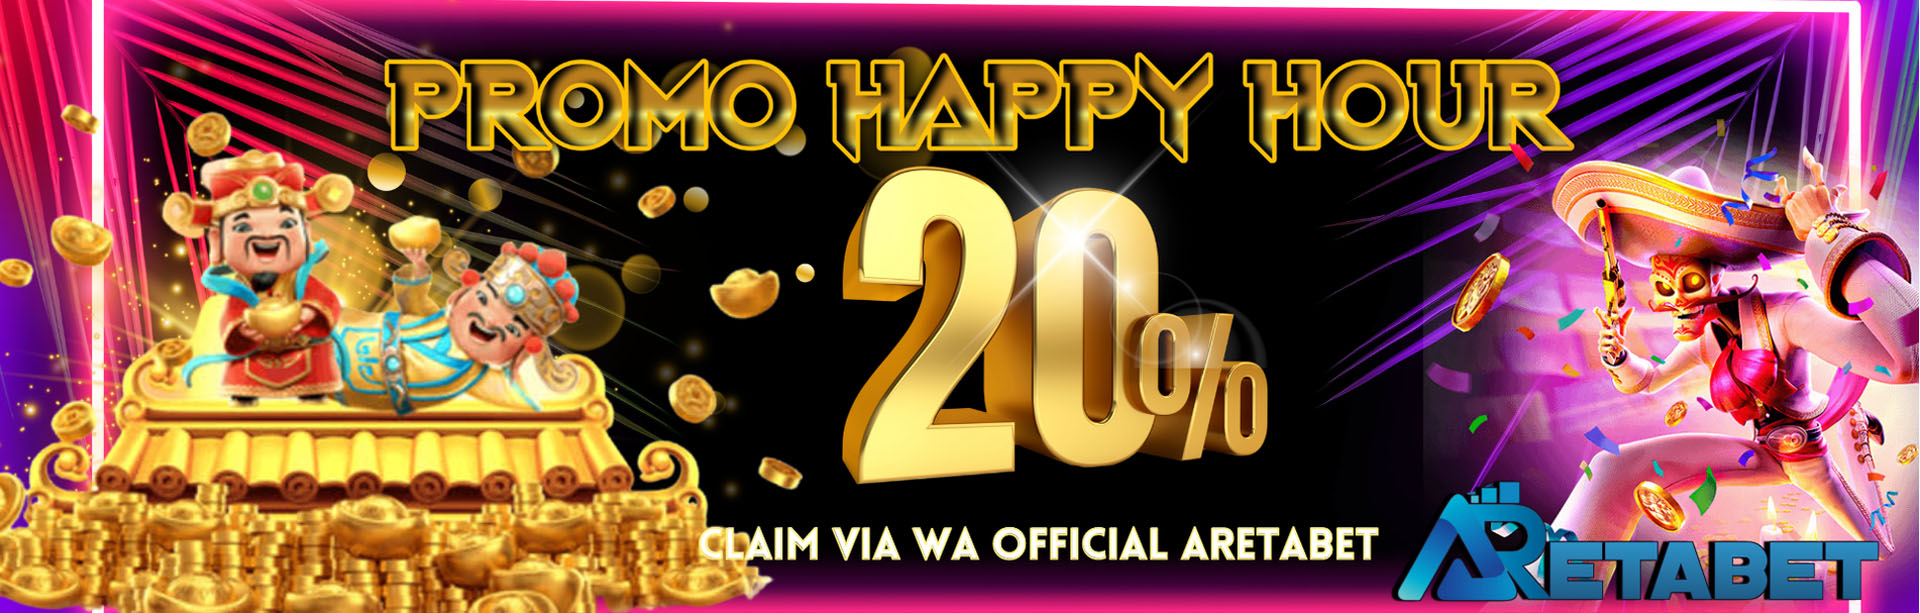 BONUS HAPPY HOUR 20%